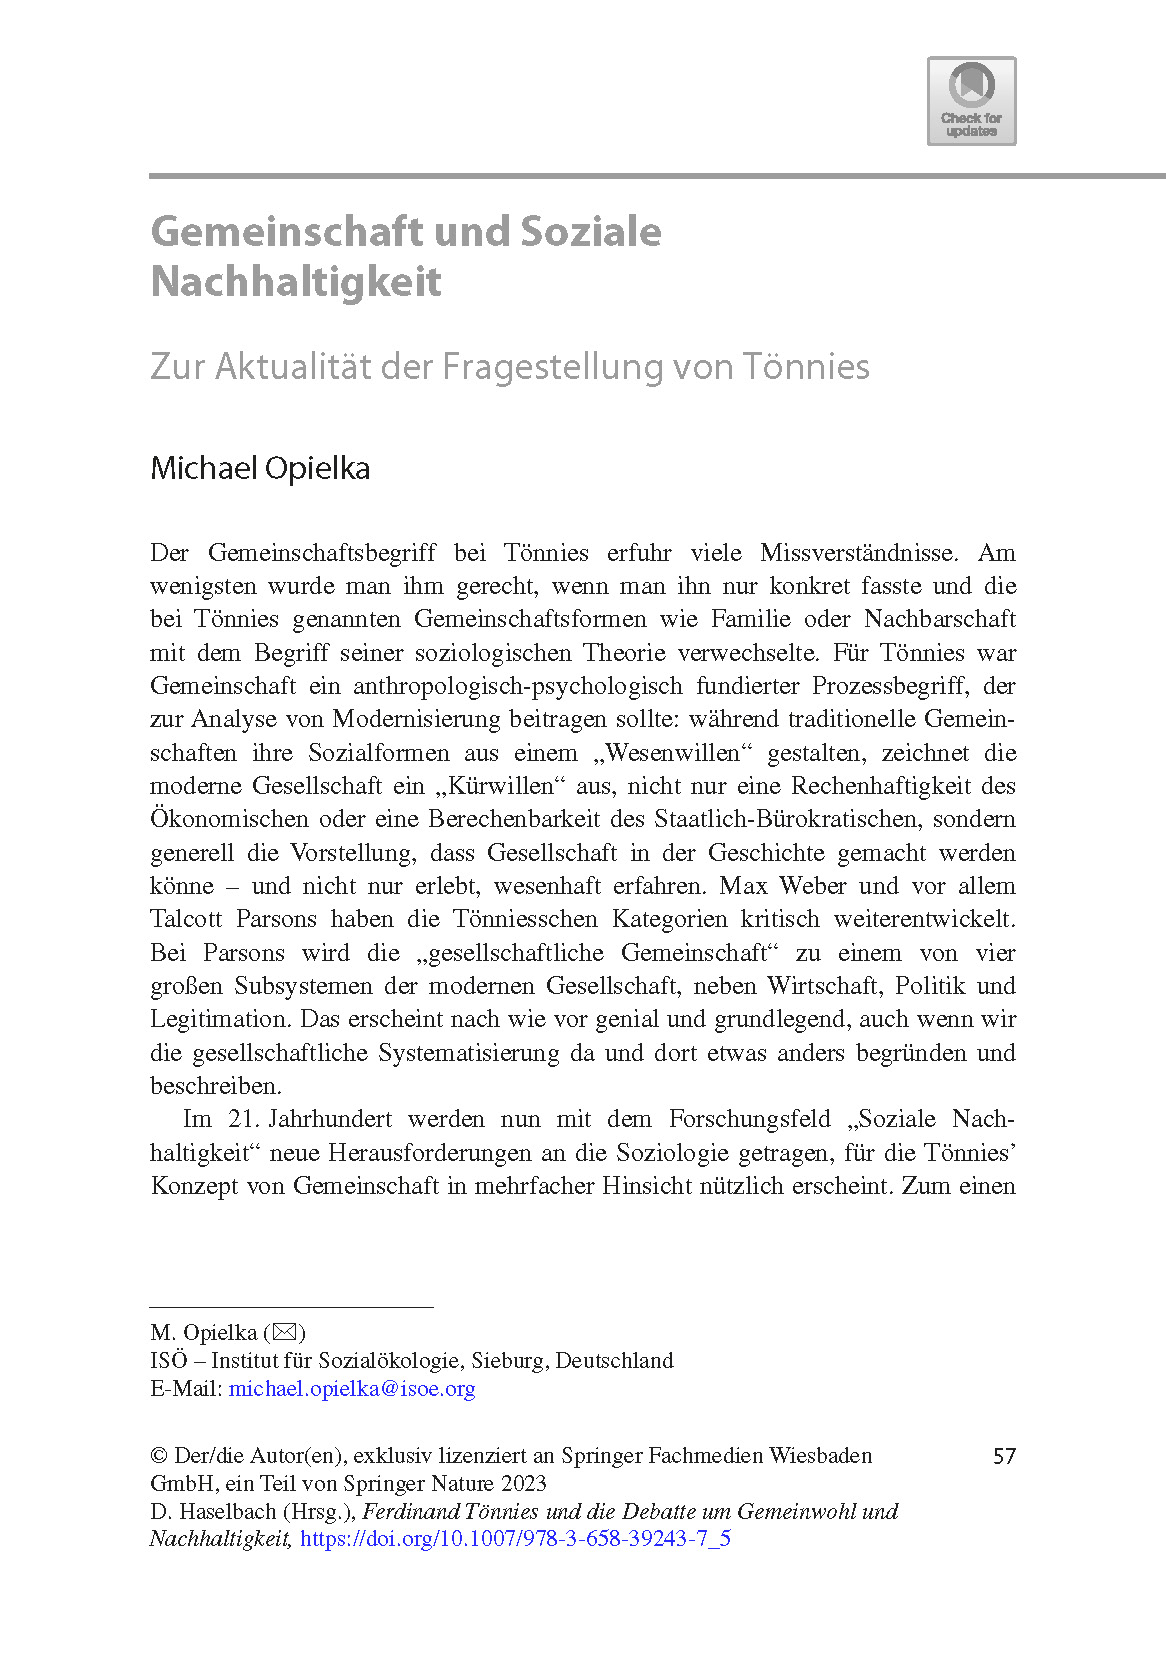 Michael Opielka, Gemeinschaft und Soziale Nachhaltigkeit (2023) 